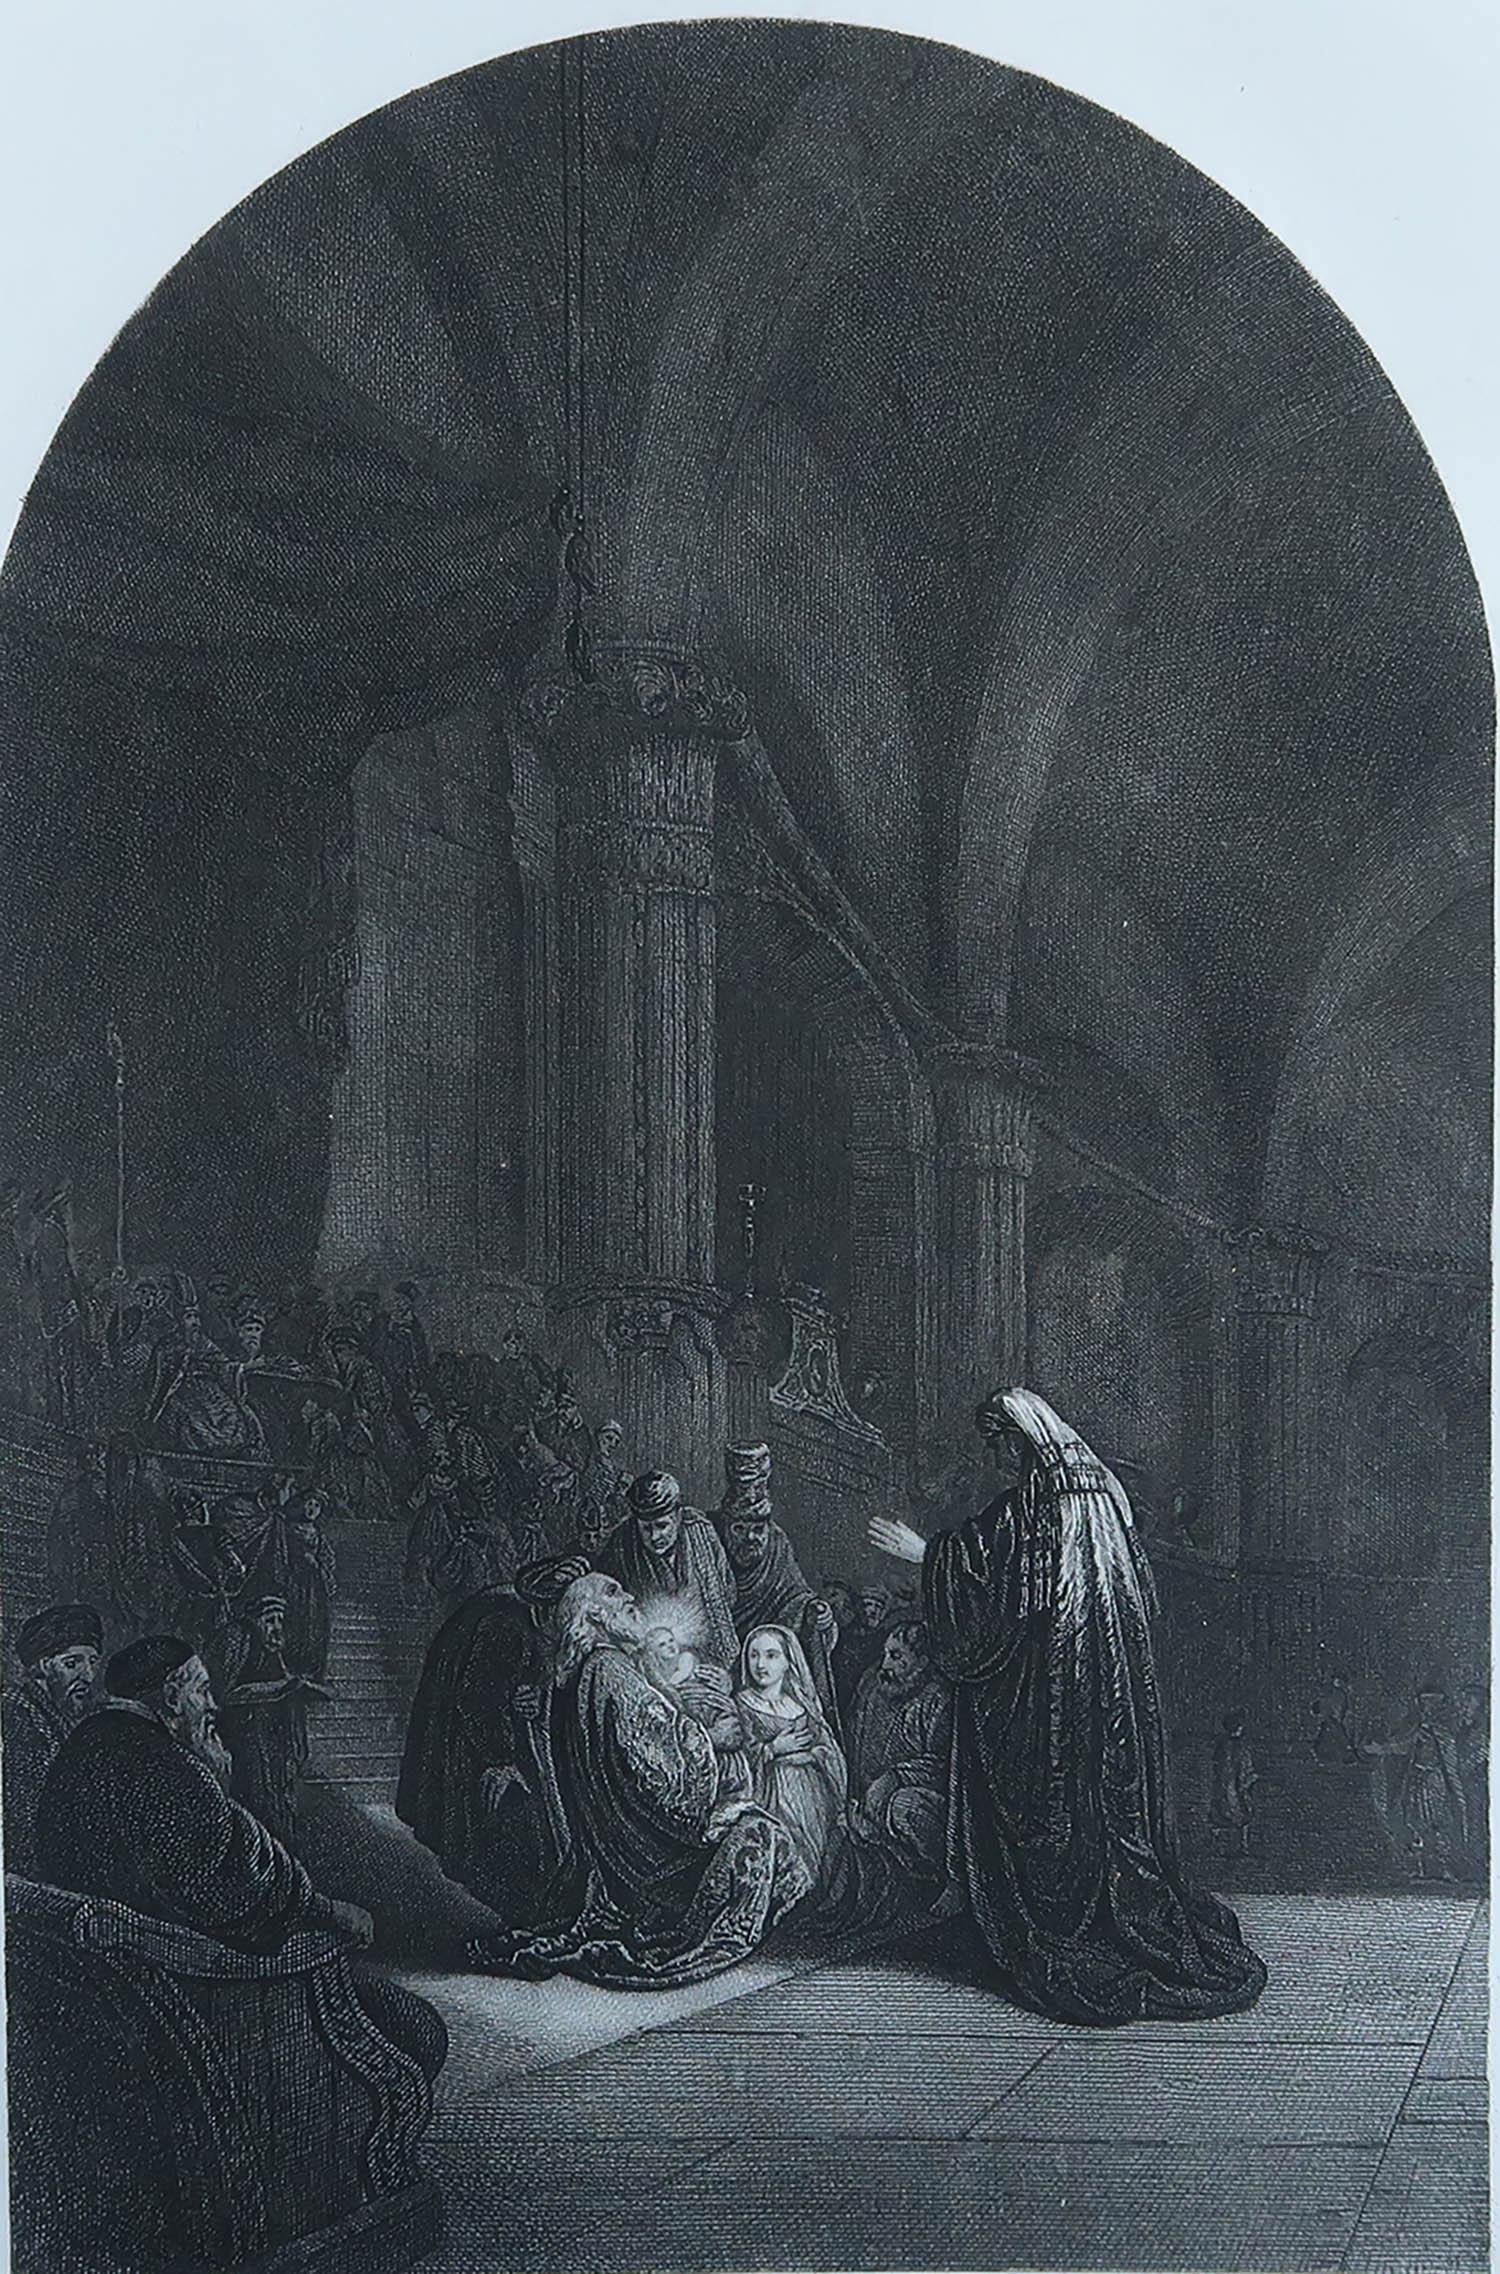 Magnifique image d'après Rembrandt.

Gravure en acier fin. 

Publié par Blackie & Sons Londres. C.1850

Non encadré.

